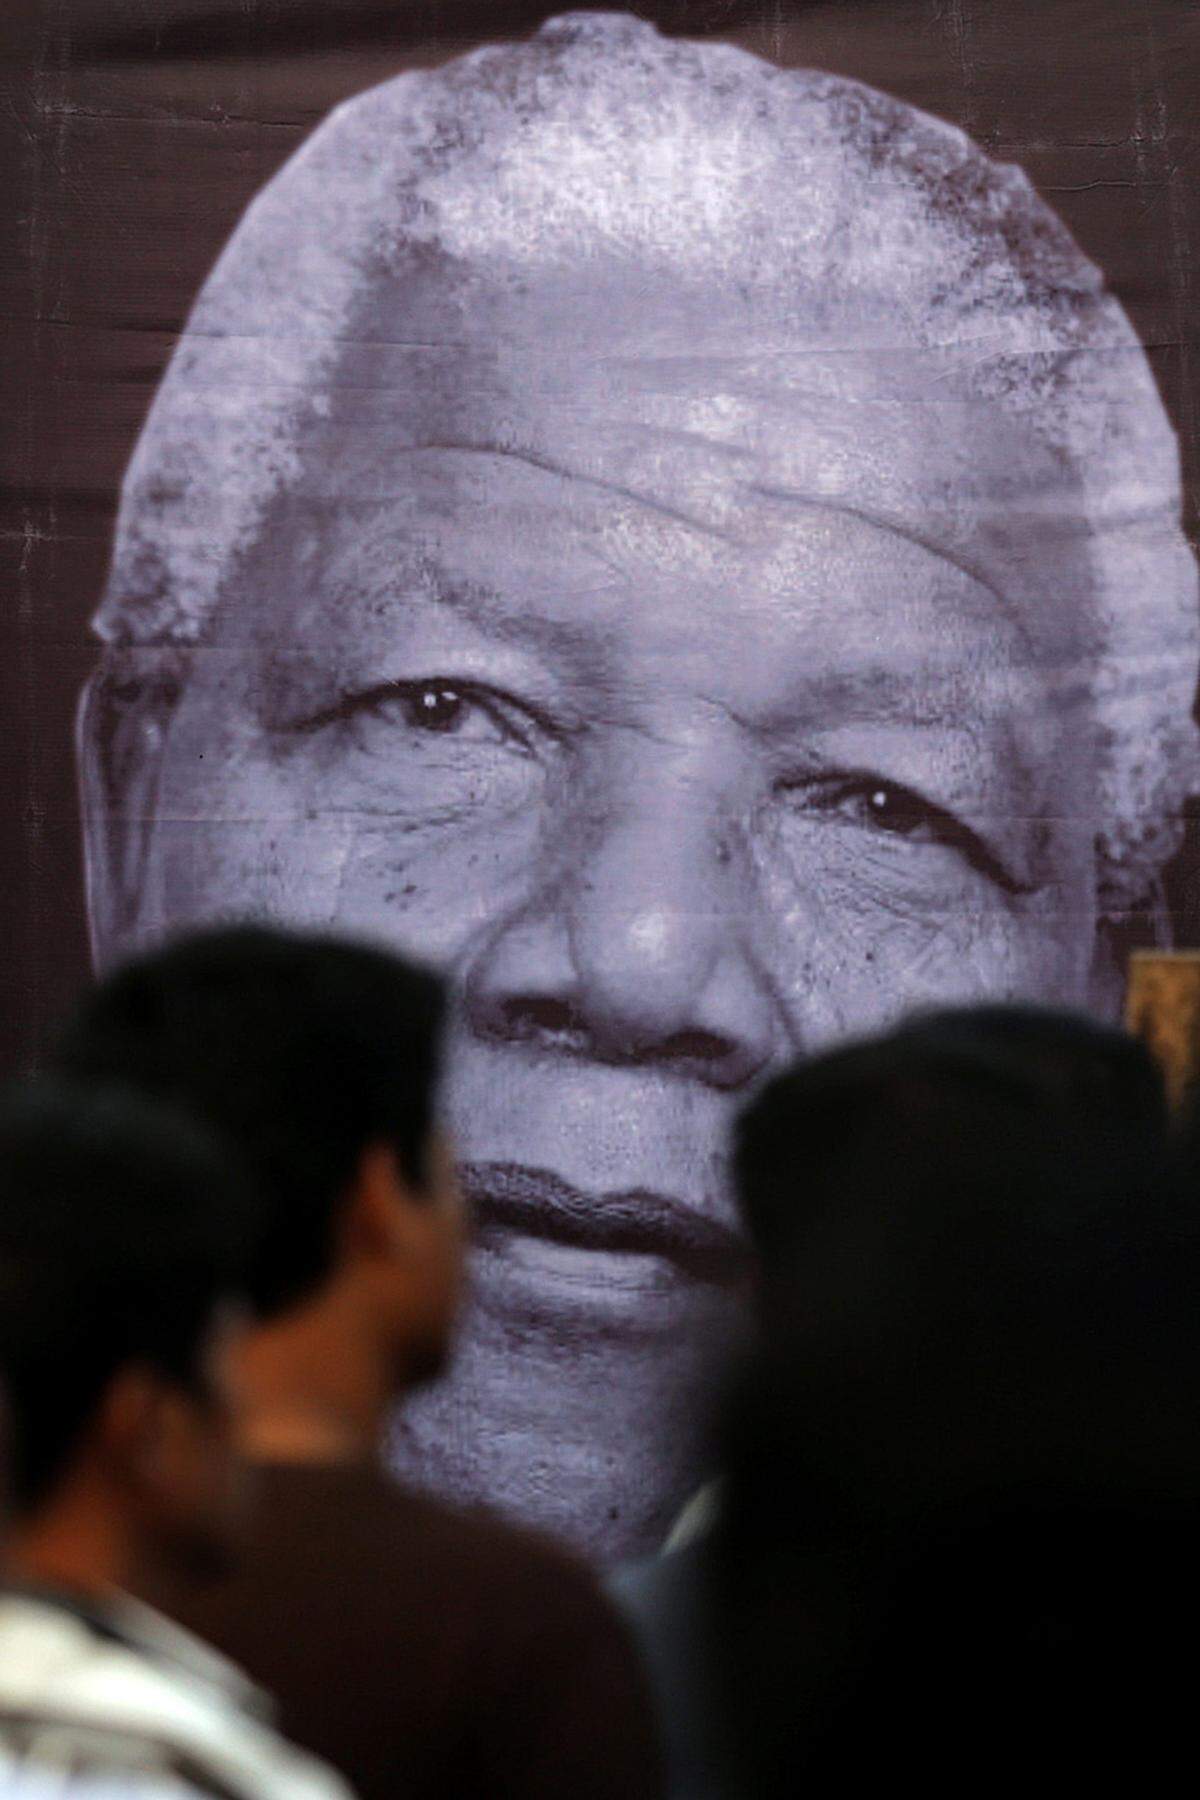 Nach dem Tod von Friedensnobelpreisträger Nelson Mandela haben zahlreiche Größen aus der Kulturwelt ihre Anteilnahme ausgedrückt.  Mandela war nicht nur Mittelpunkt zahlreicher Filme über sein Leben, er hatte auch für Menschenrechte oder für Anti-Aids-Kampagnen starkge. Unter "46664", der Häftlingsnummer von Mandela während seiner 26-jährigen Haft auf Robben Island, gab es eine weltweite Anti-Aids-Kampagne der Nelson-Mandela-Stiftung. Unter "46664" fanden auch mehrere Benefizkonzerte statt.